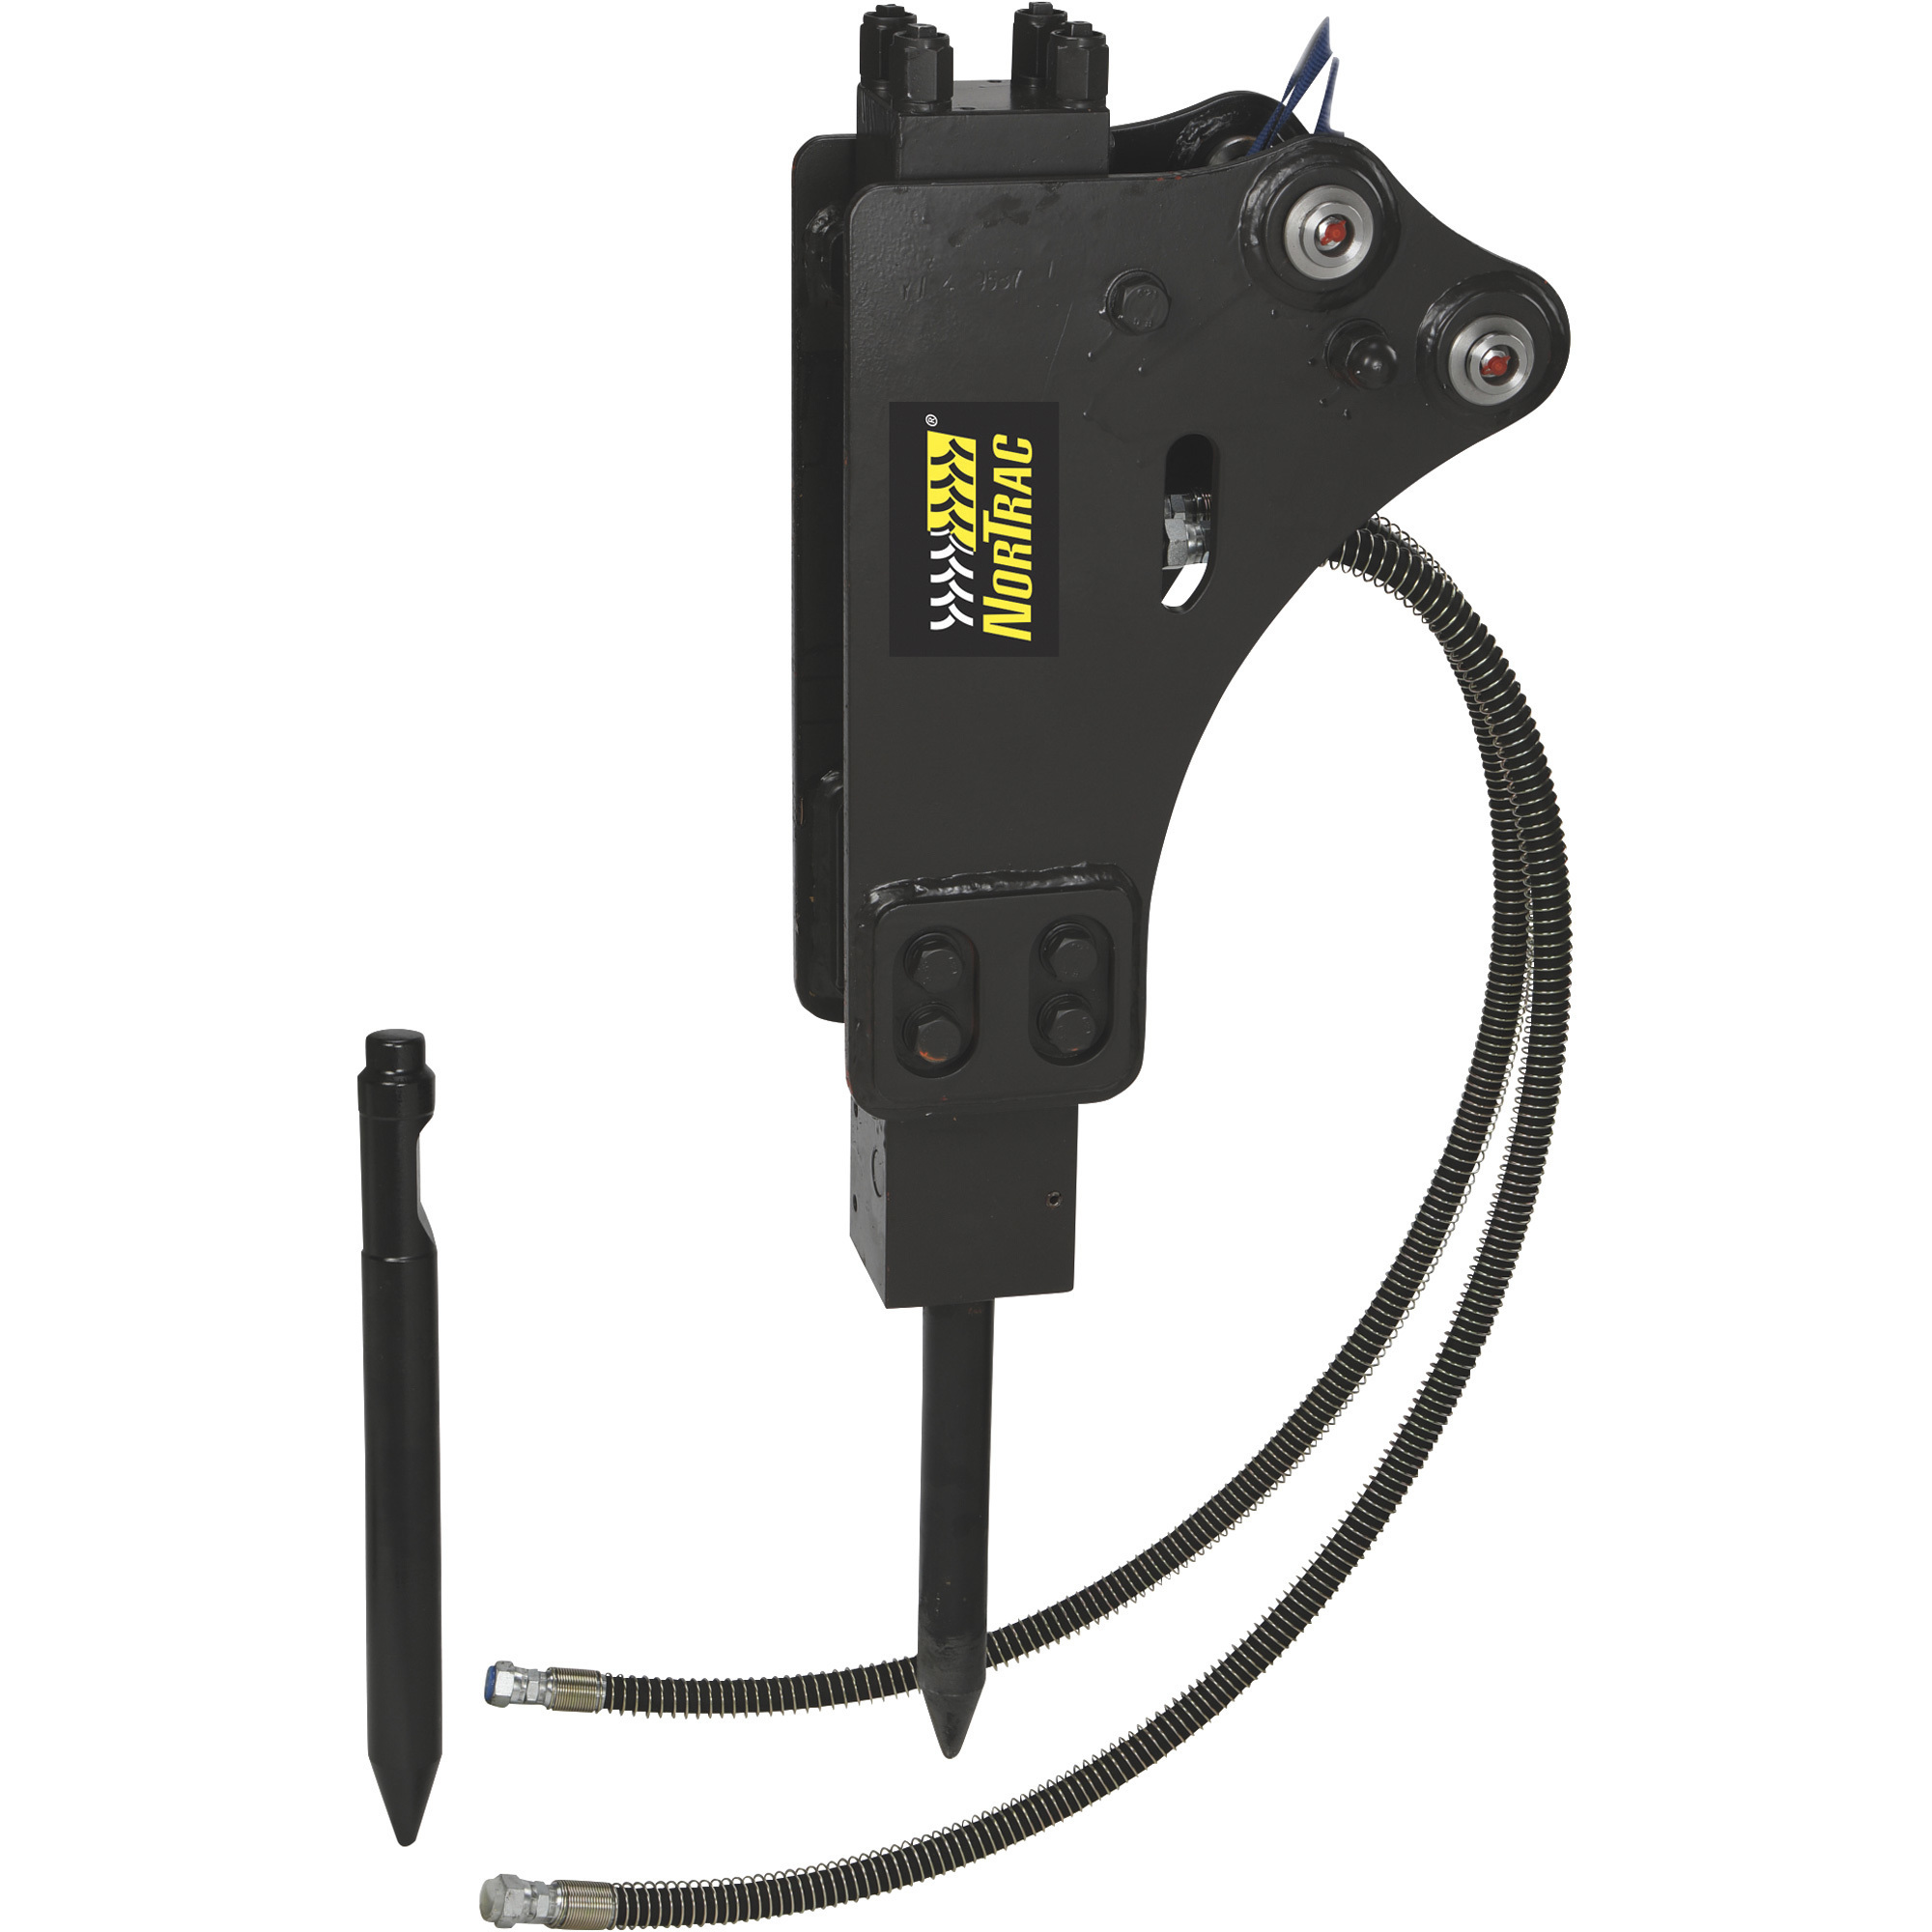 NorTrac Hammer Attachment for Mini Excavator Item# 1111419, 1276-1696 PSI Operating Pressure